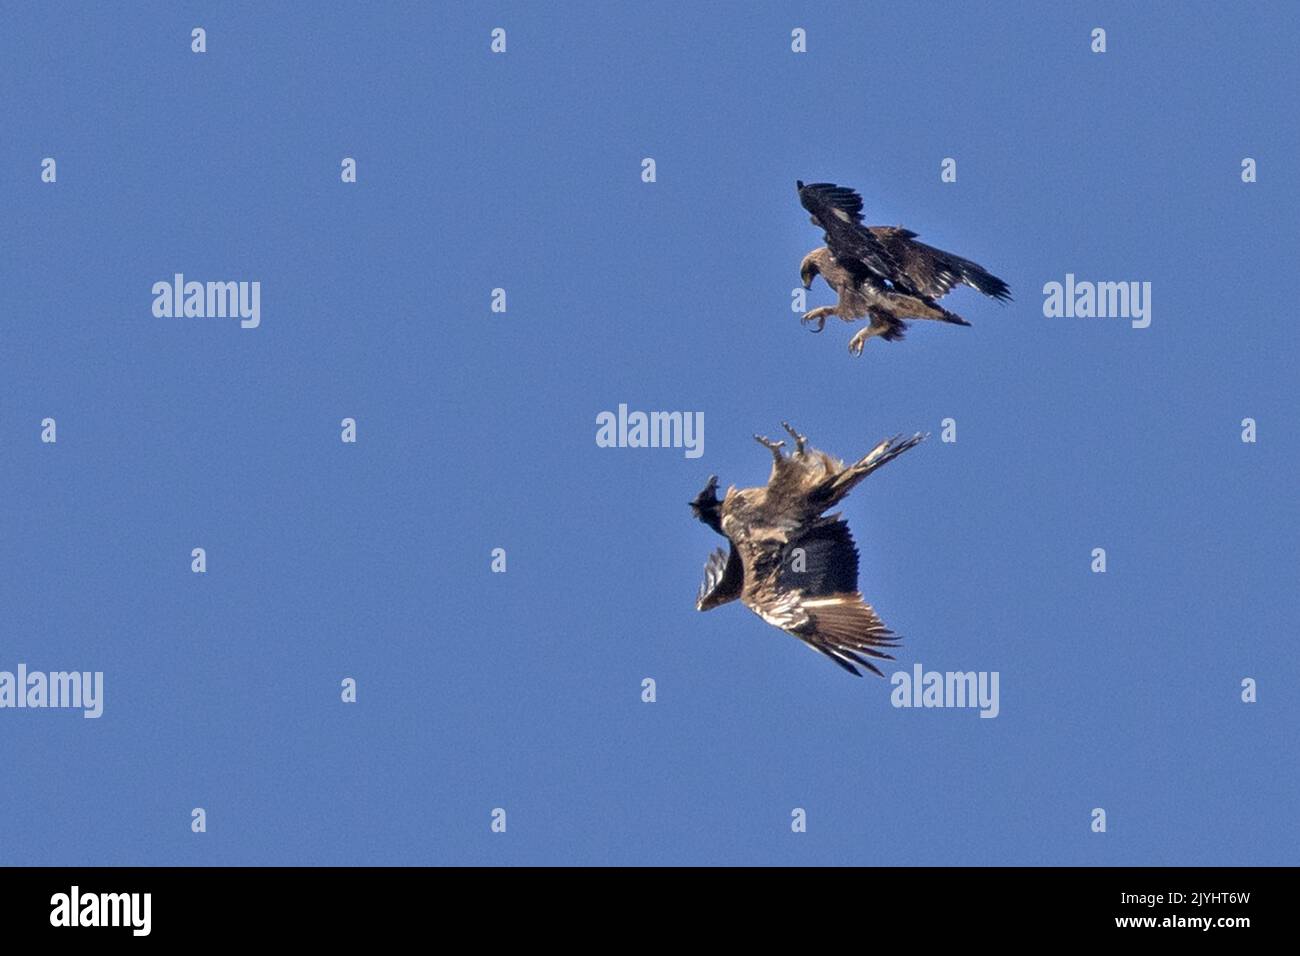 Aquila reale (Aquila chrysaetos), aquila reale in volo attacca un avvoltoio portoroso giovanile, Italia, Parco Nazionale del Gran Paradiso Foto Stock